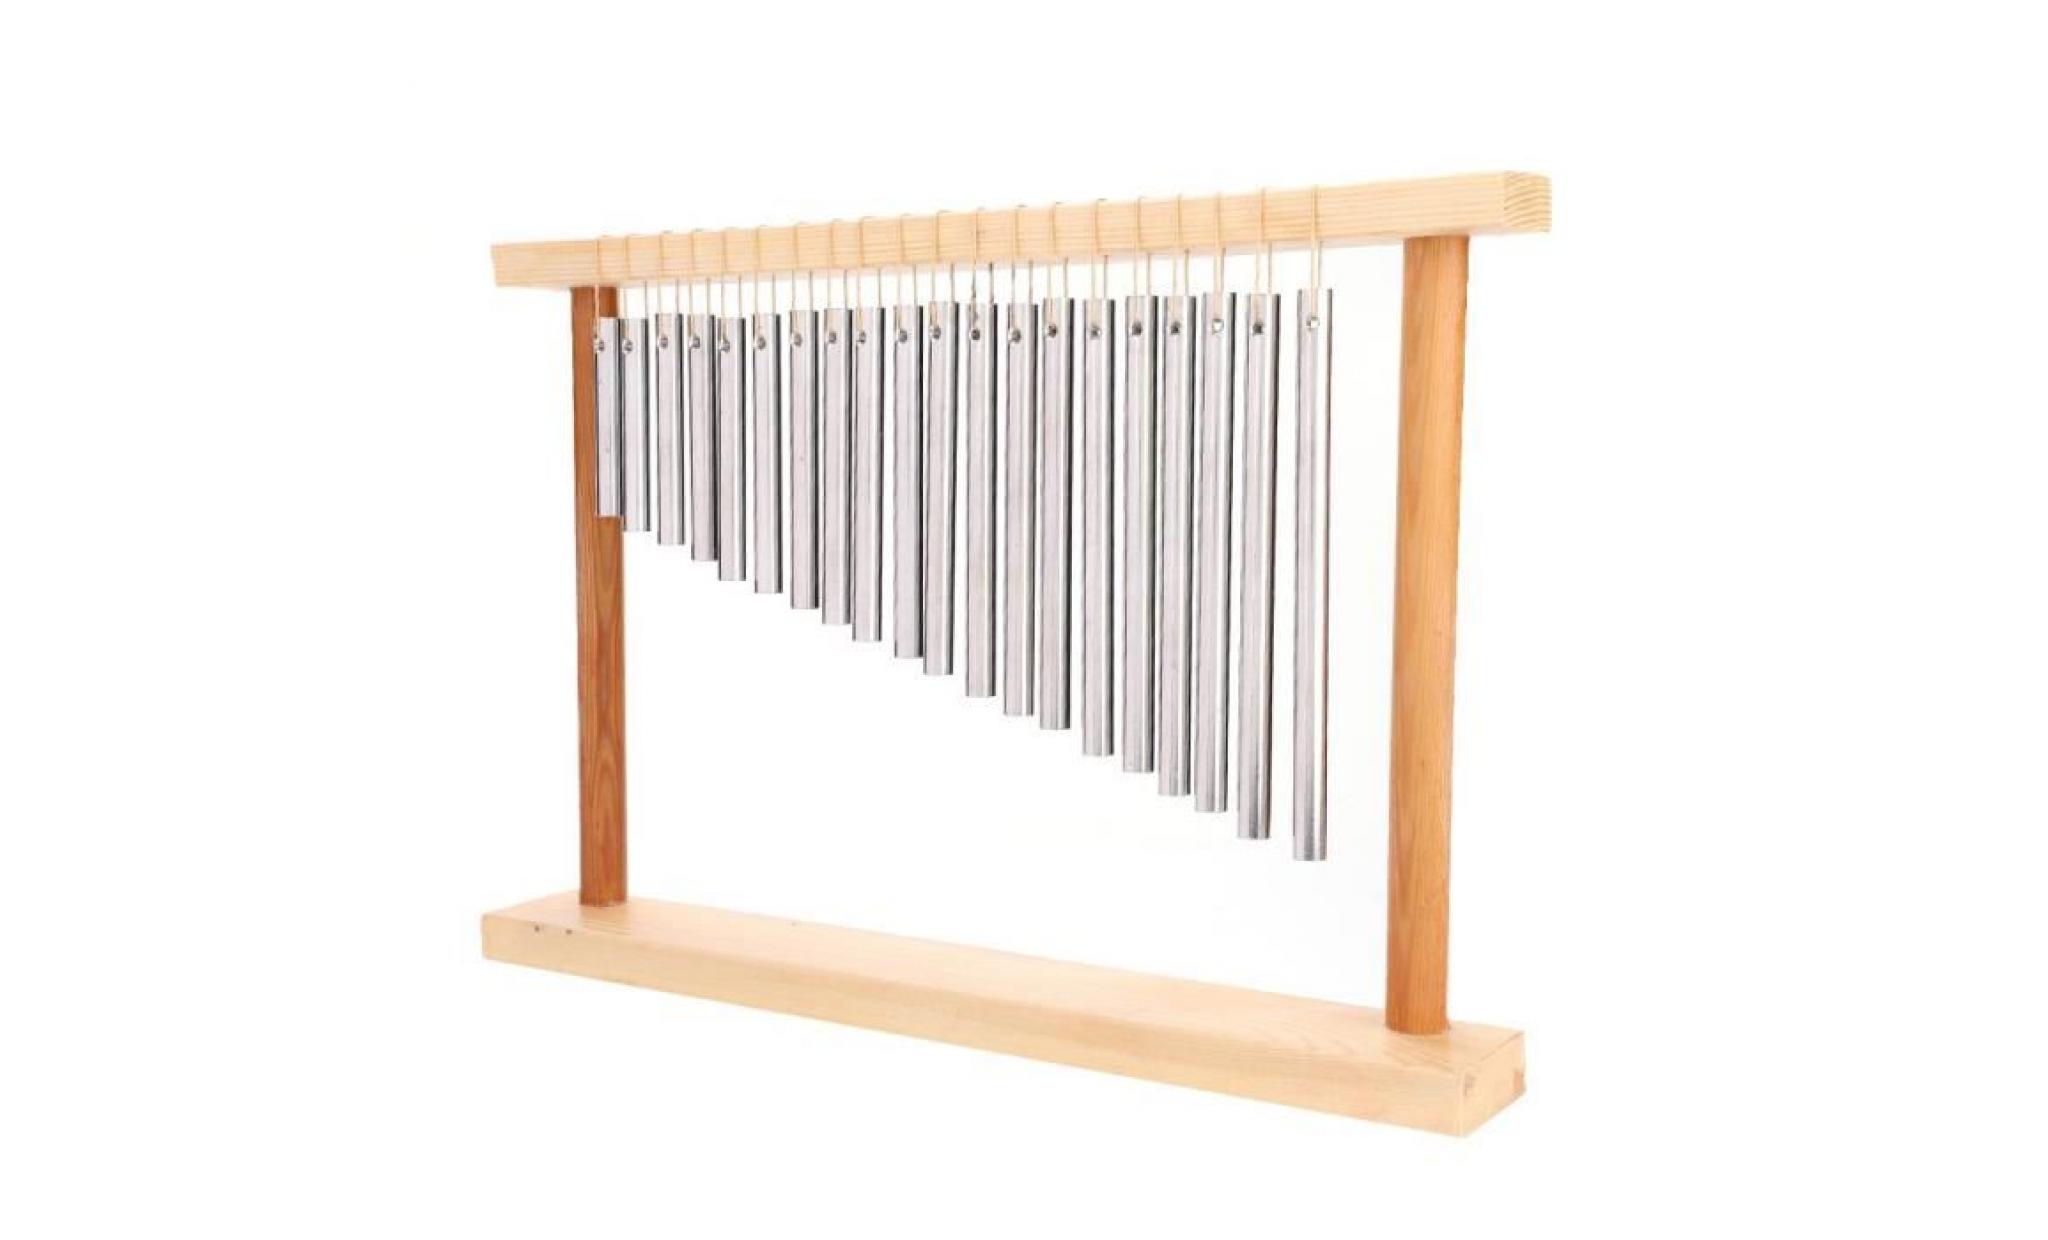 20 barres instrument de percussion musicale  carillon de vent avec 20 tuyau en aluminium solide carillons à percussion(argent)   sev pas cher